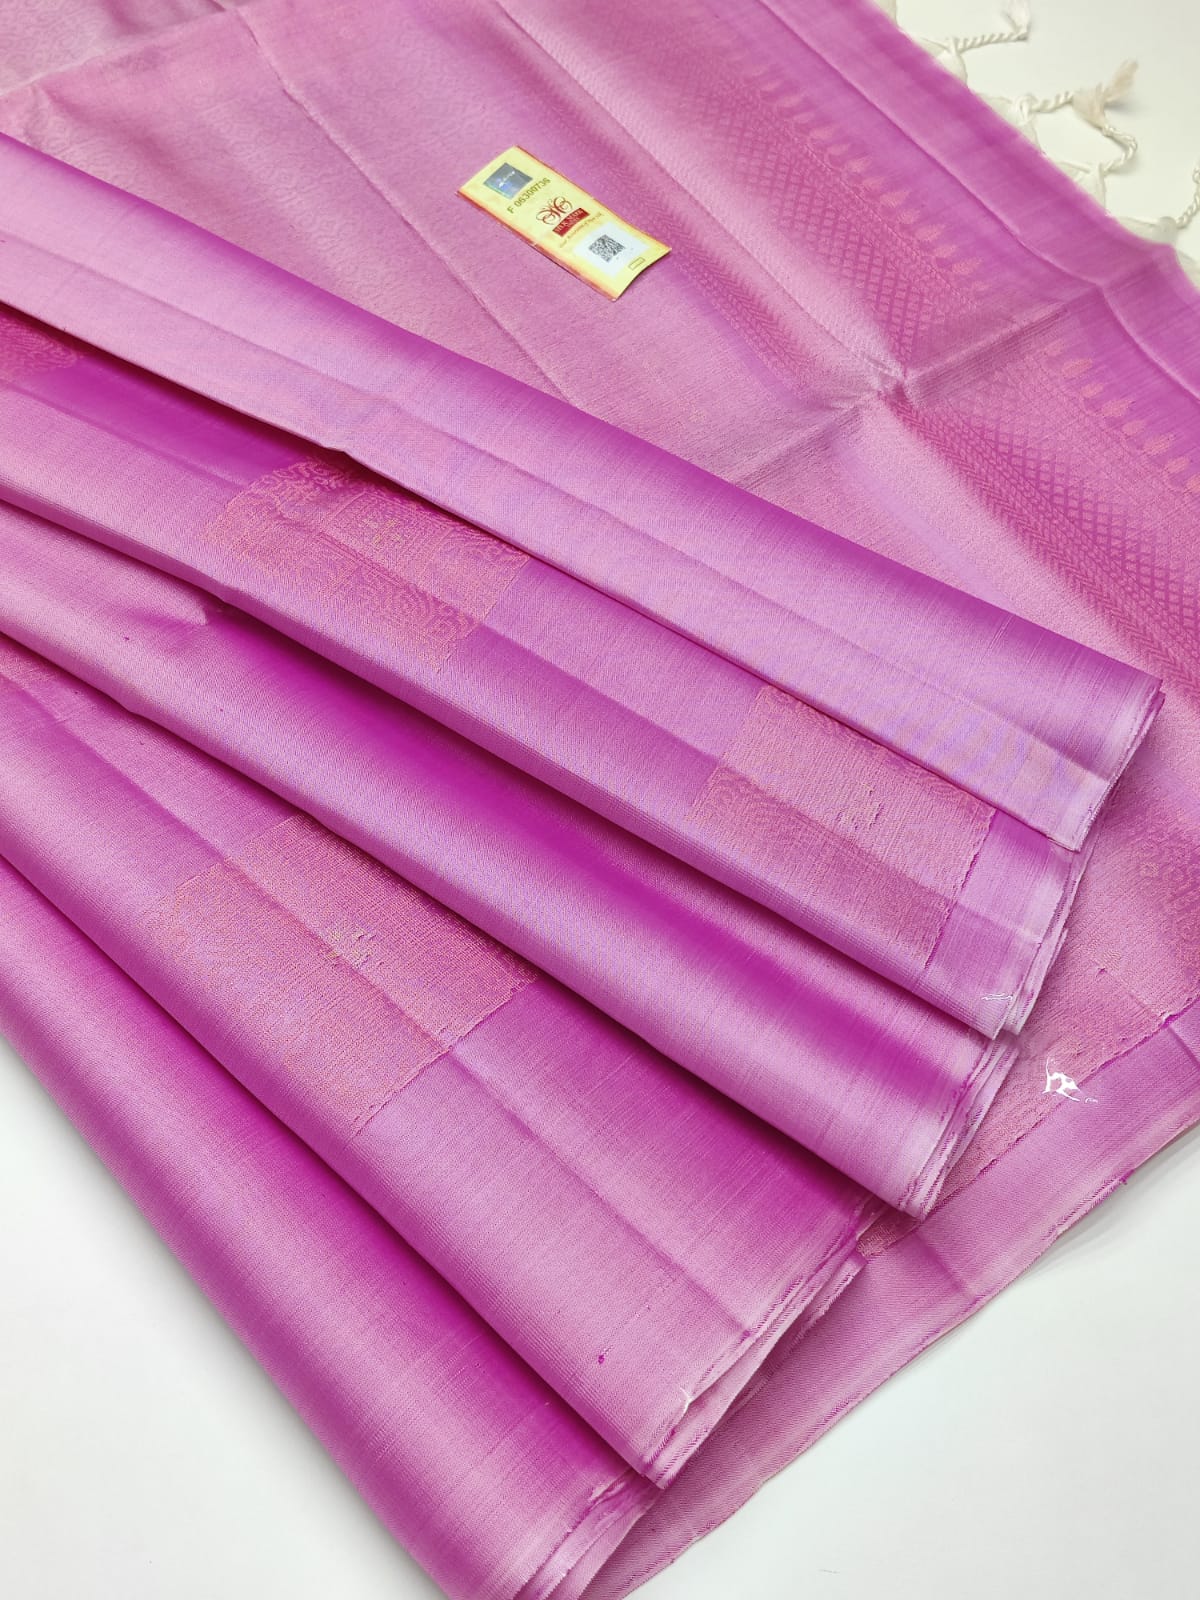 Aggregate 71+ sirumugai sarees manufacturers best